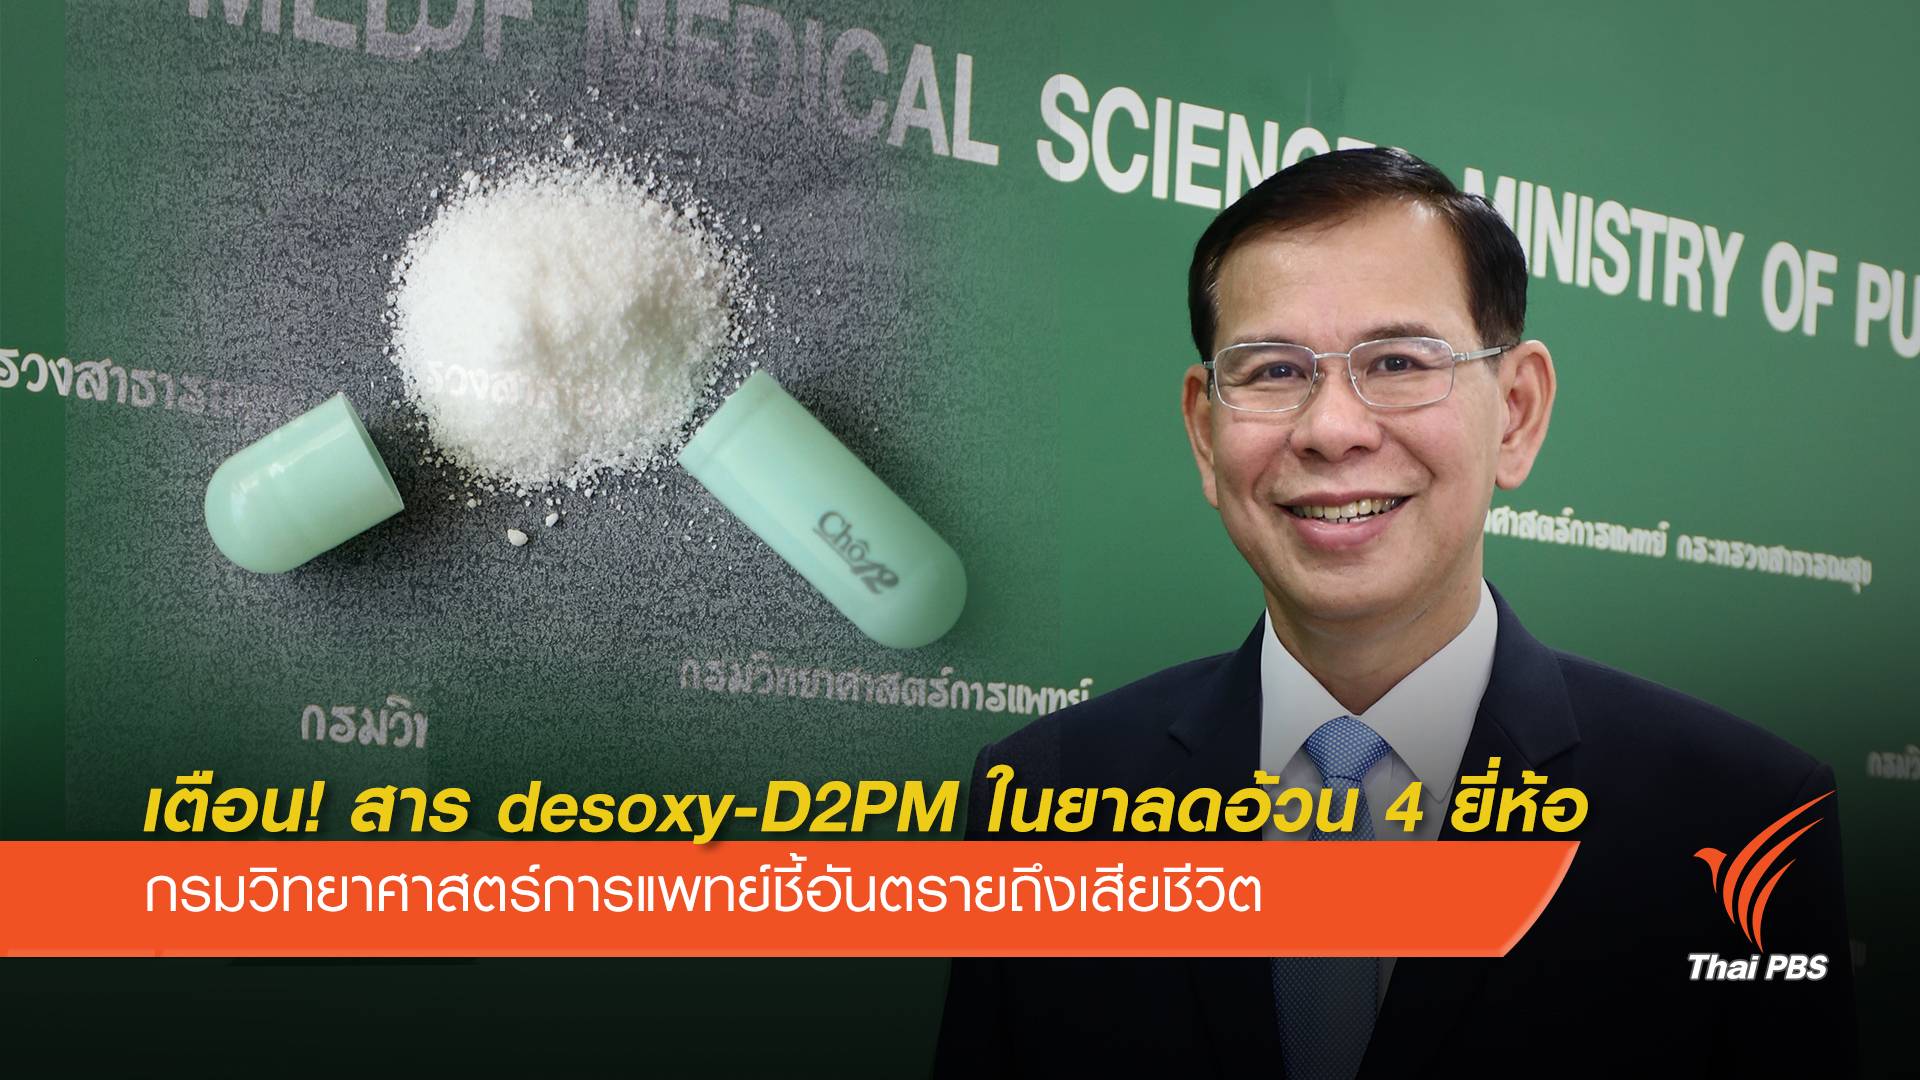 เตือน! สาร desoxy-D2PM ในยาลดอ้วน 4 ยี่ห้อ อันตรายถึงชีวิต